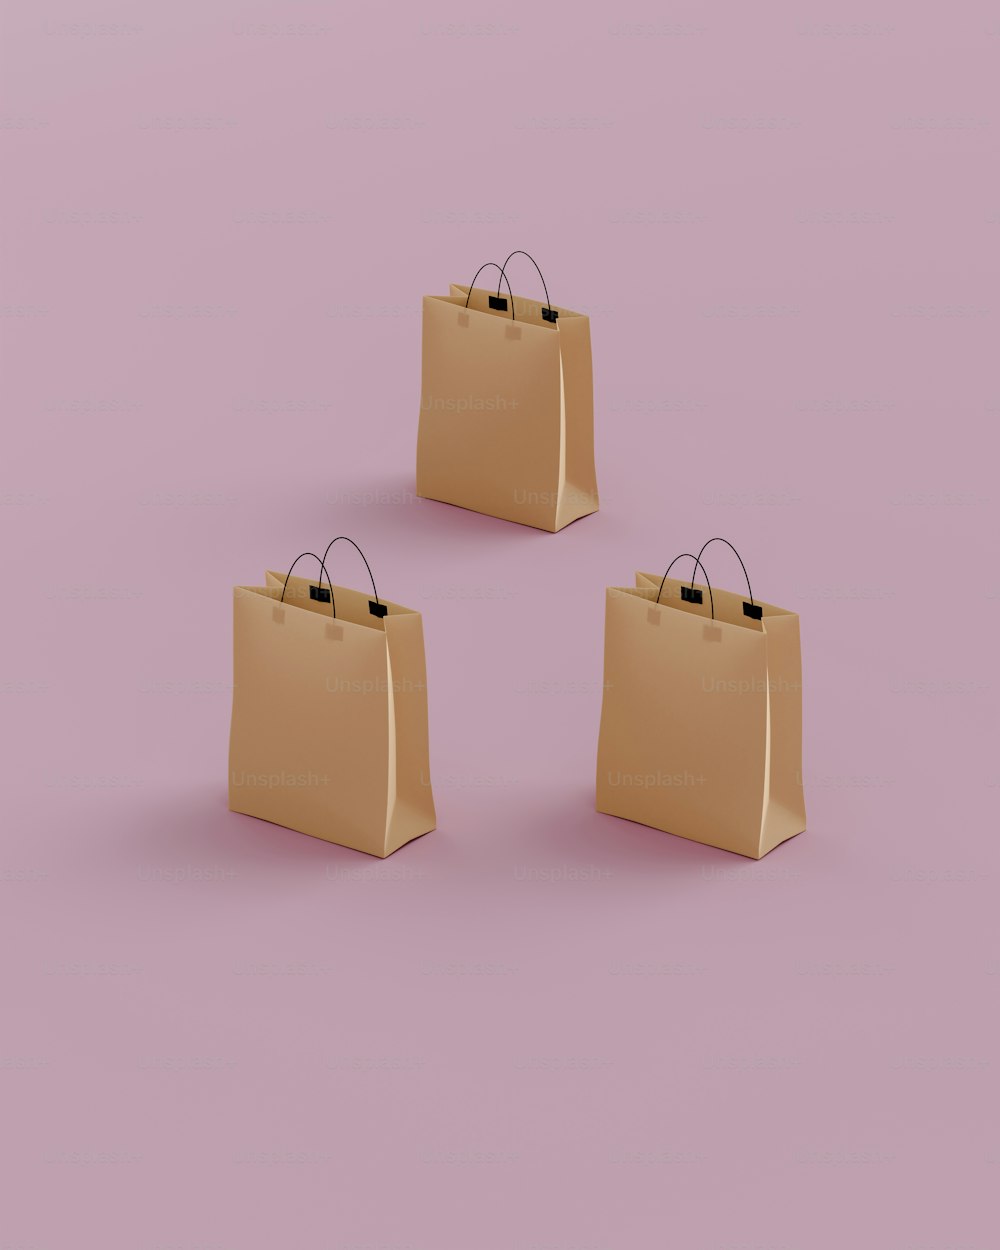 três sacos de compras marrons em um fundo cor-de-rosa